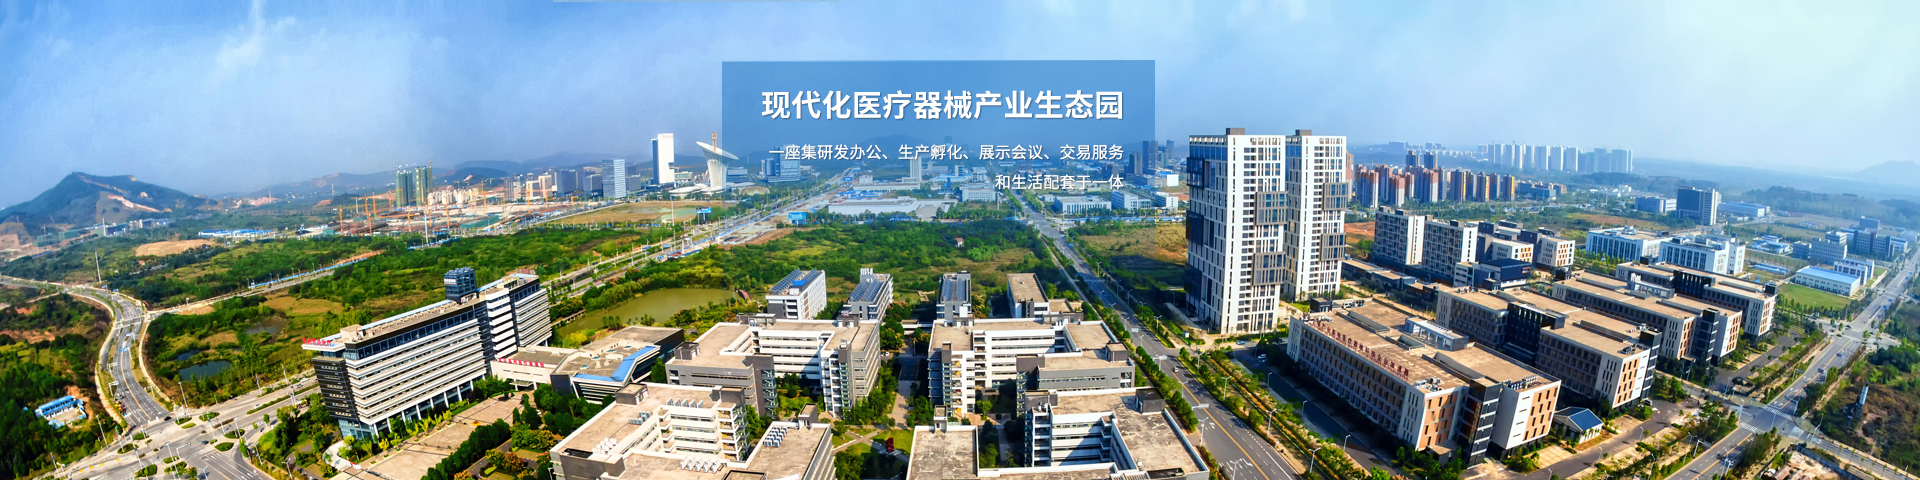 武汉高科医疗器械园有限公司